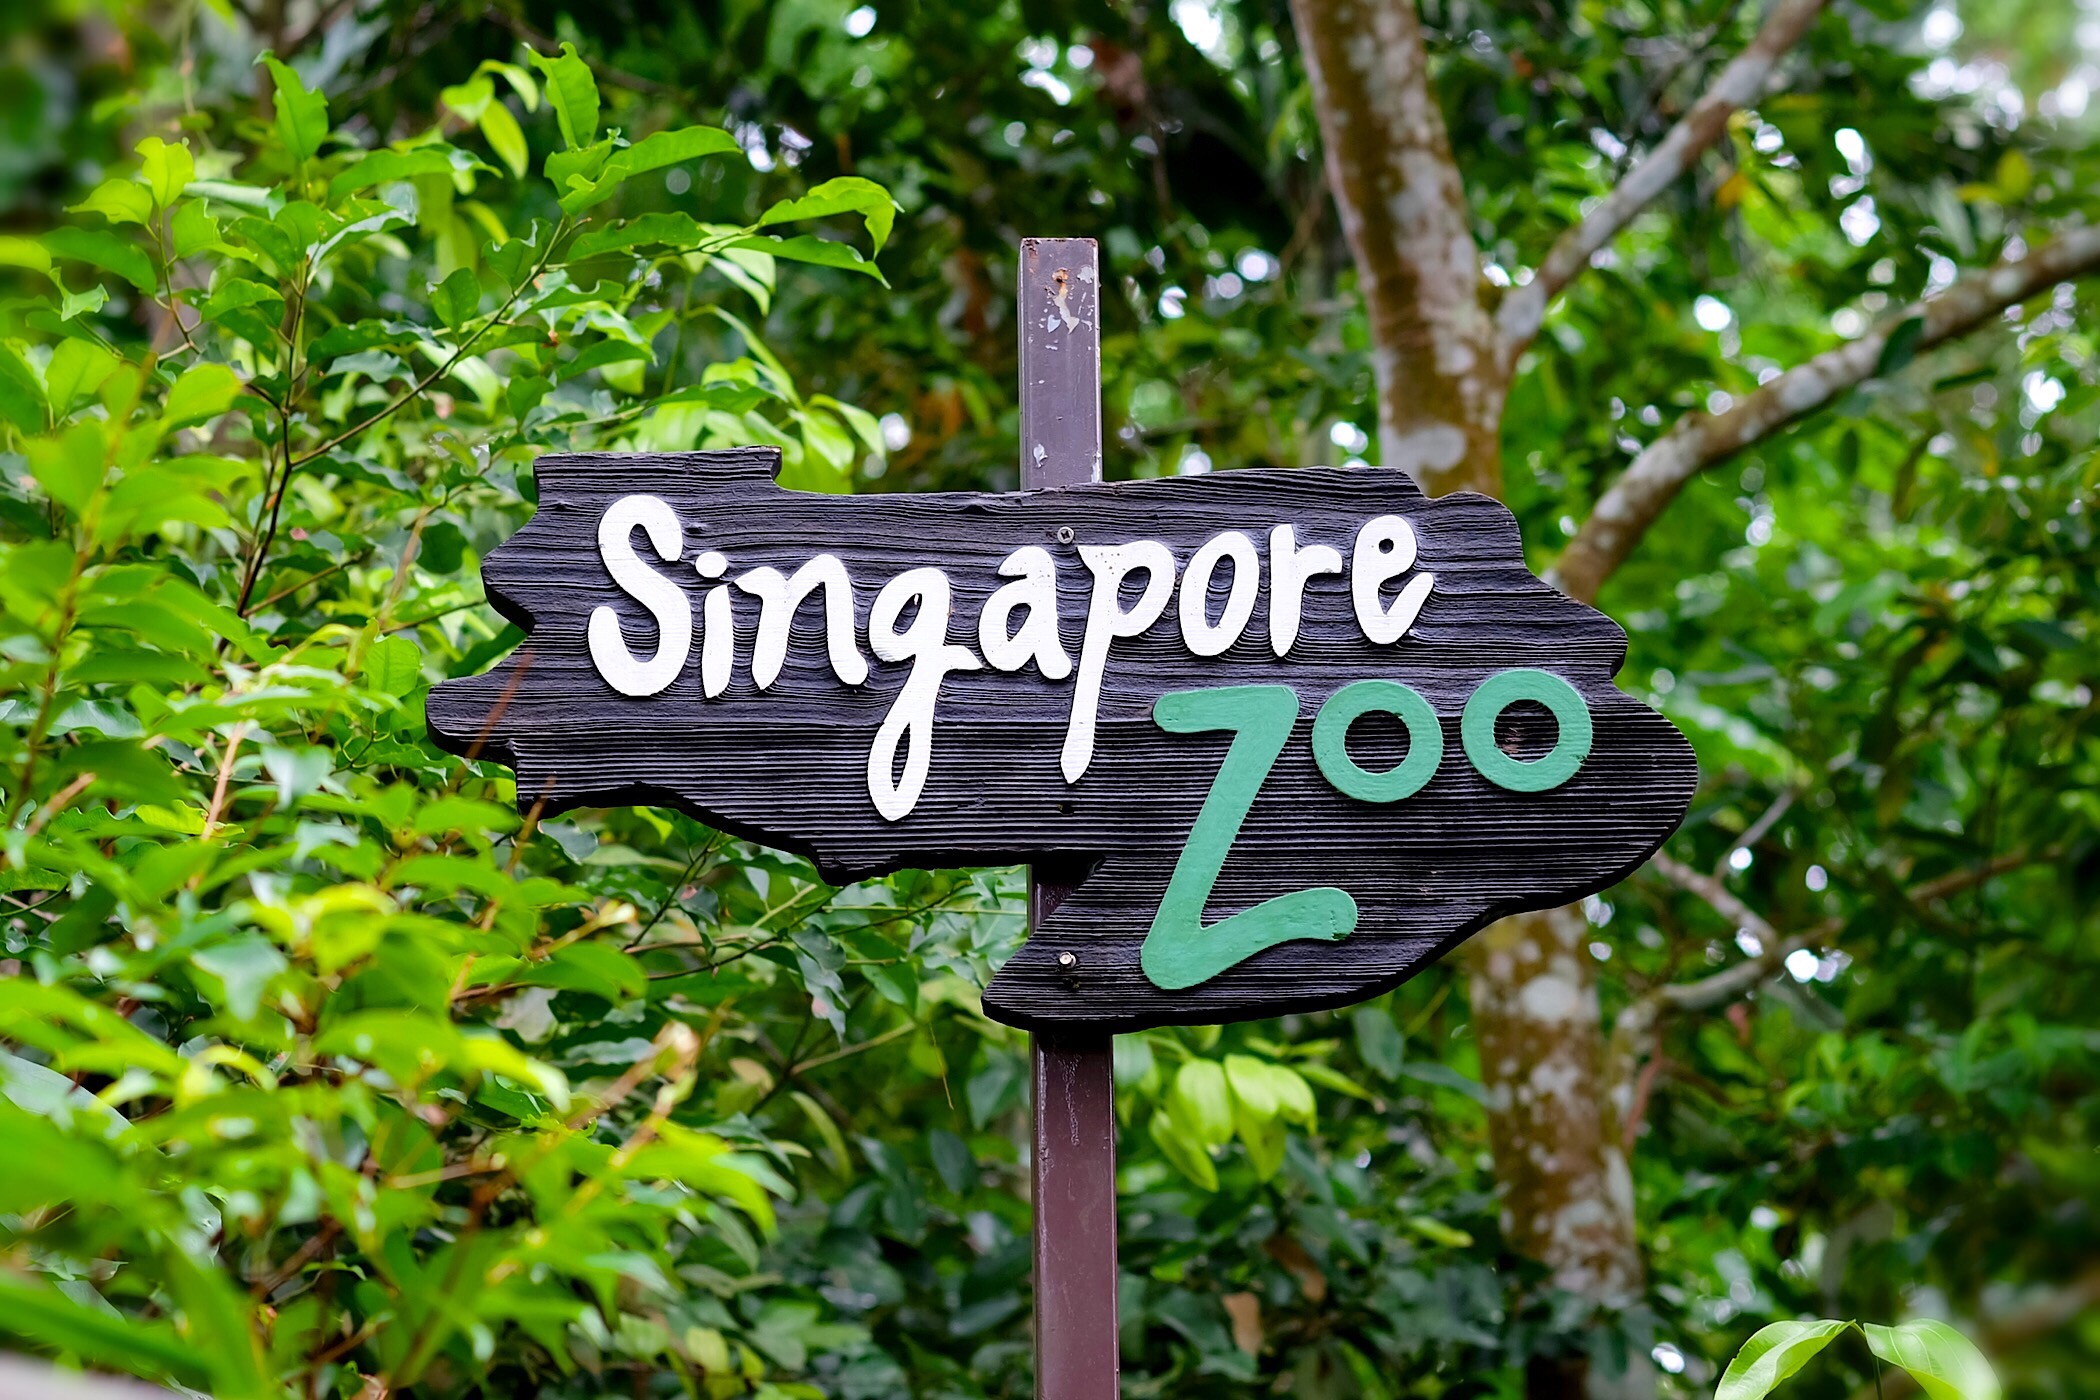 Singapore Zoo — Singapore